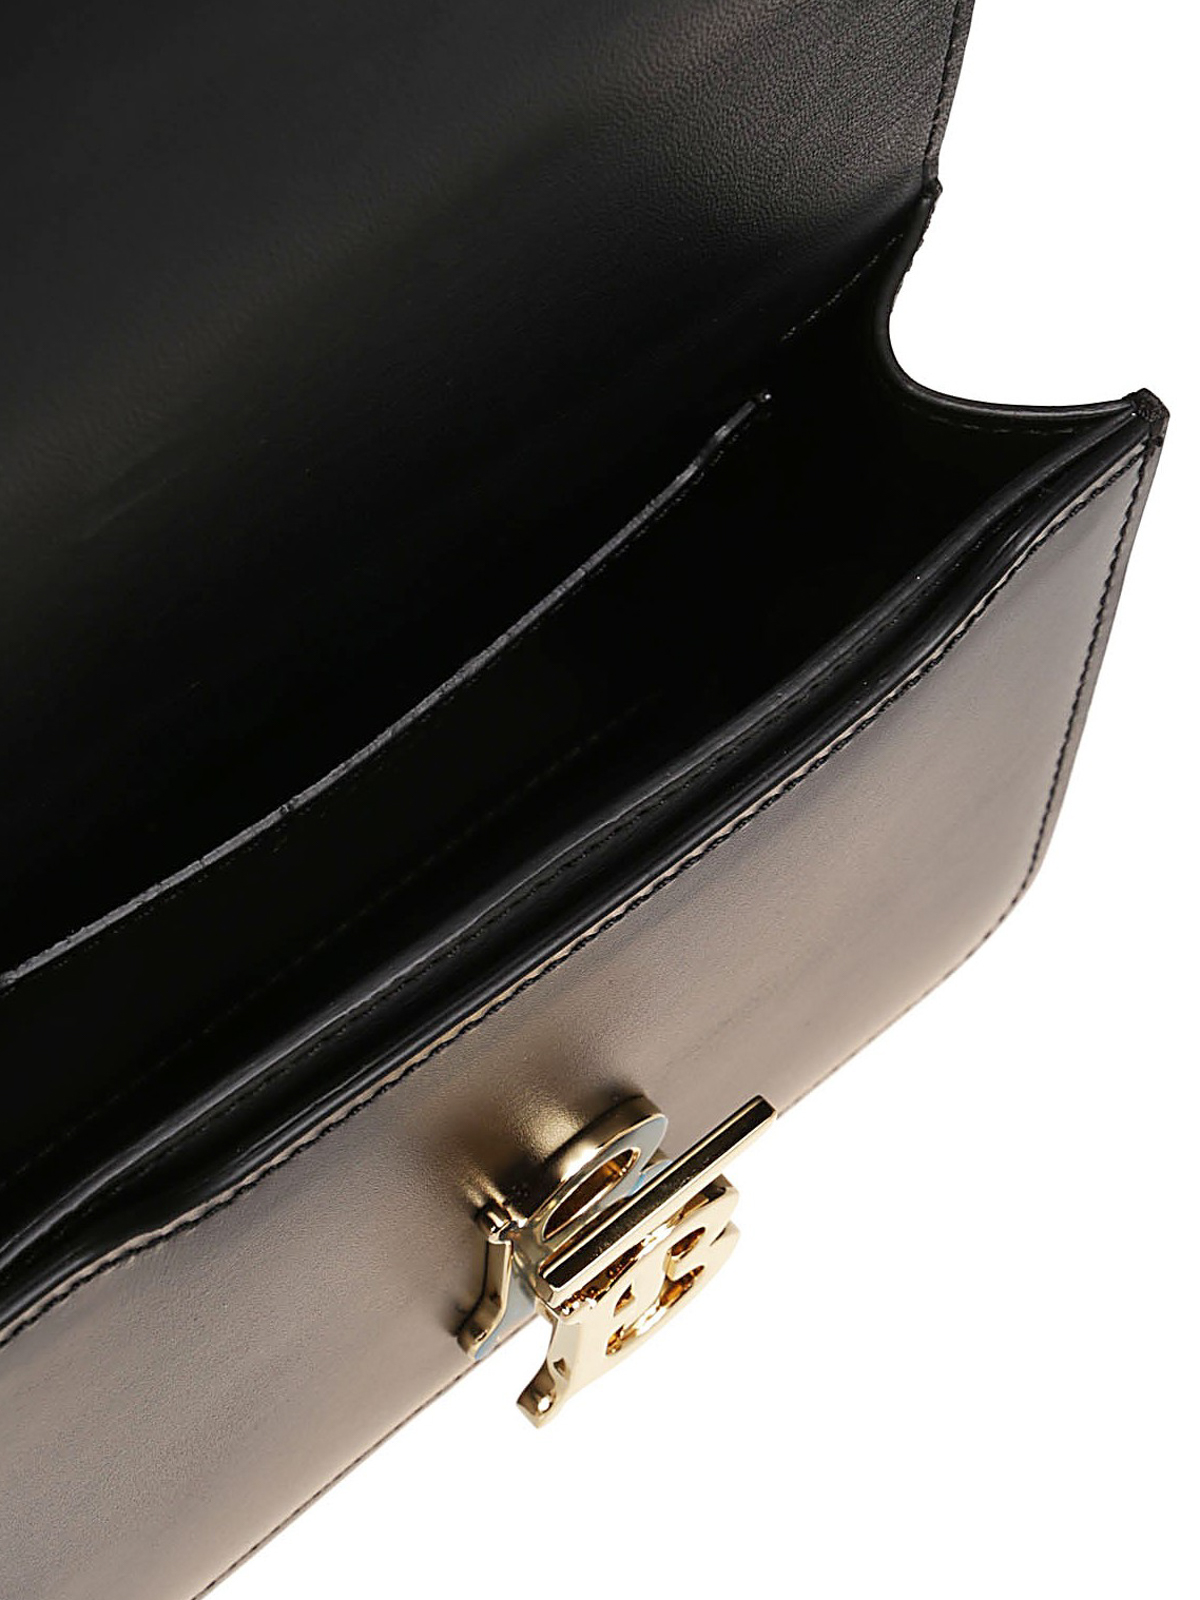 Burberry Black Smooth Calfskin Leather TB Shoulder Bag